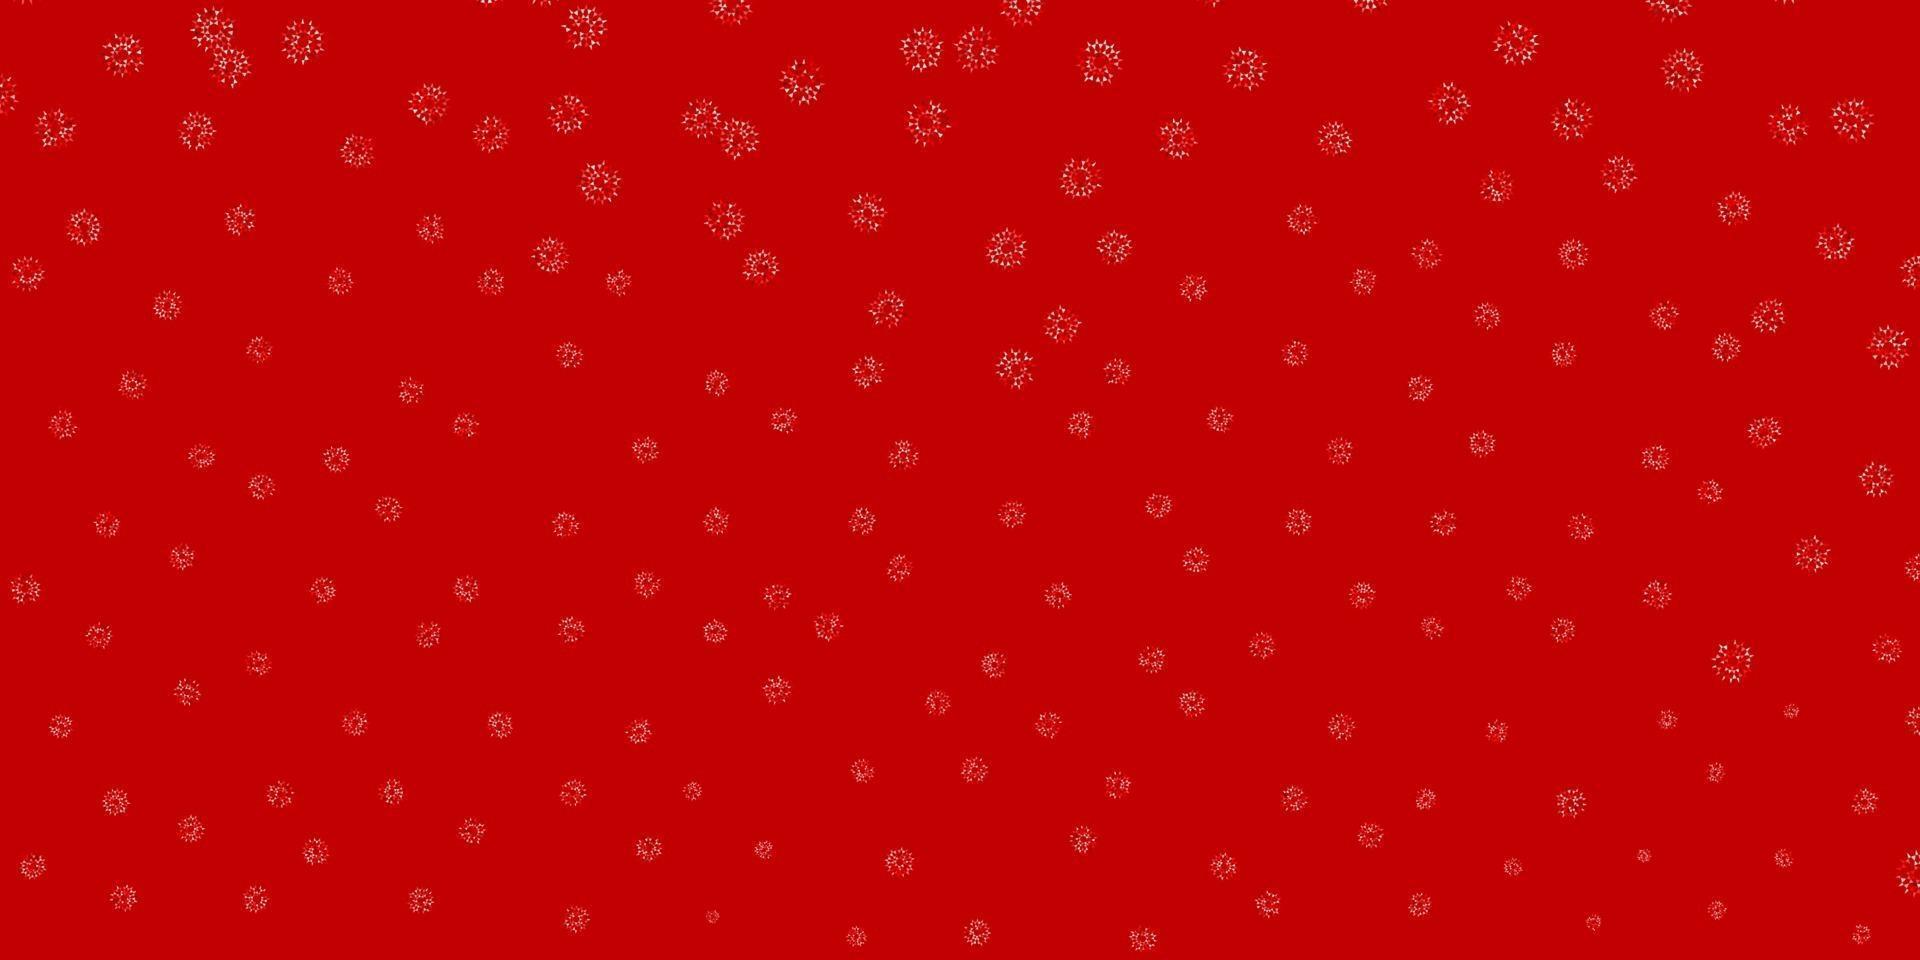 luz vermelha vector doodle padrão com flores.